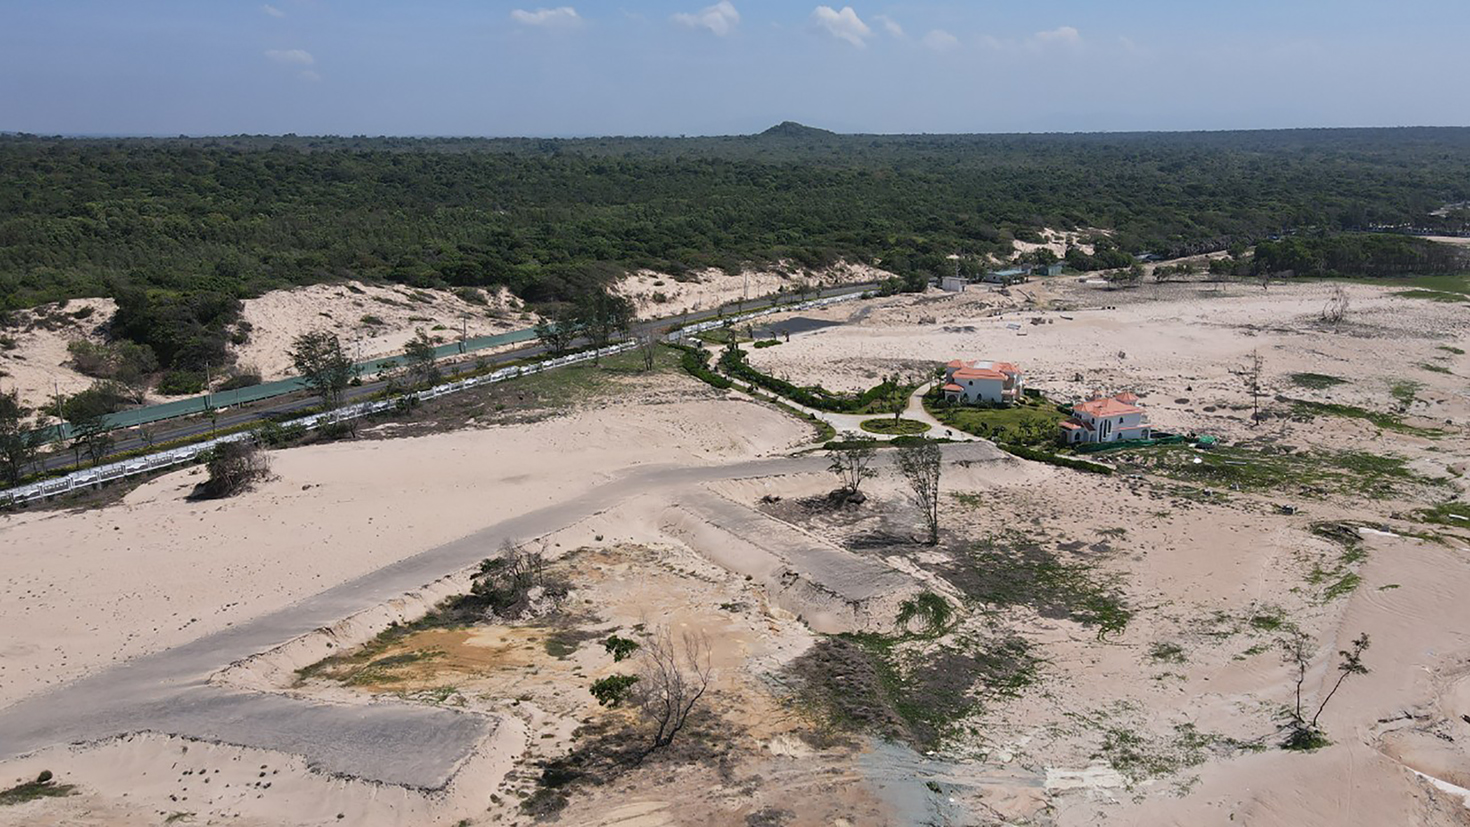 Dự án Khu nghỉ dưỡng Edenia Resort (thuộc 2 xã Bông Trang, Bưng Riềng - huyện Xuyên Mộc) do Công ty CP Du lịch Biển Xanh đầu tư, nằm trong nhóm dự án đang triển khai xây dựng